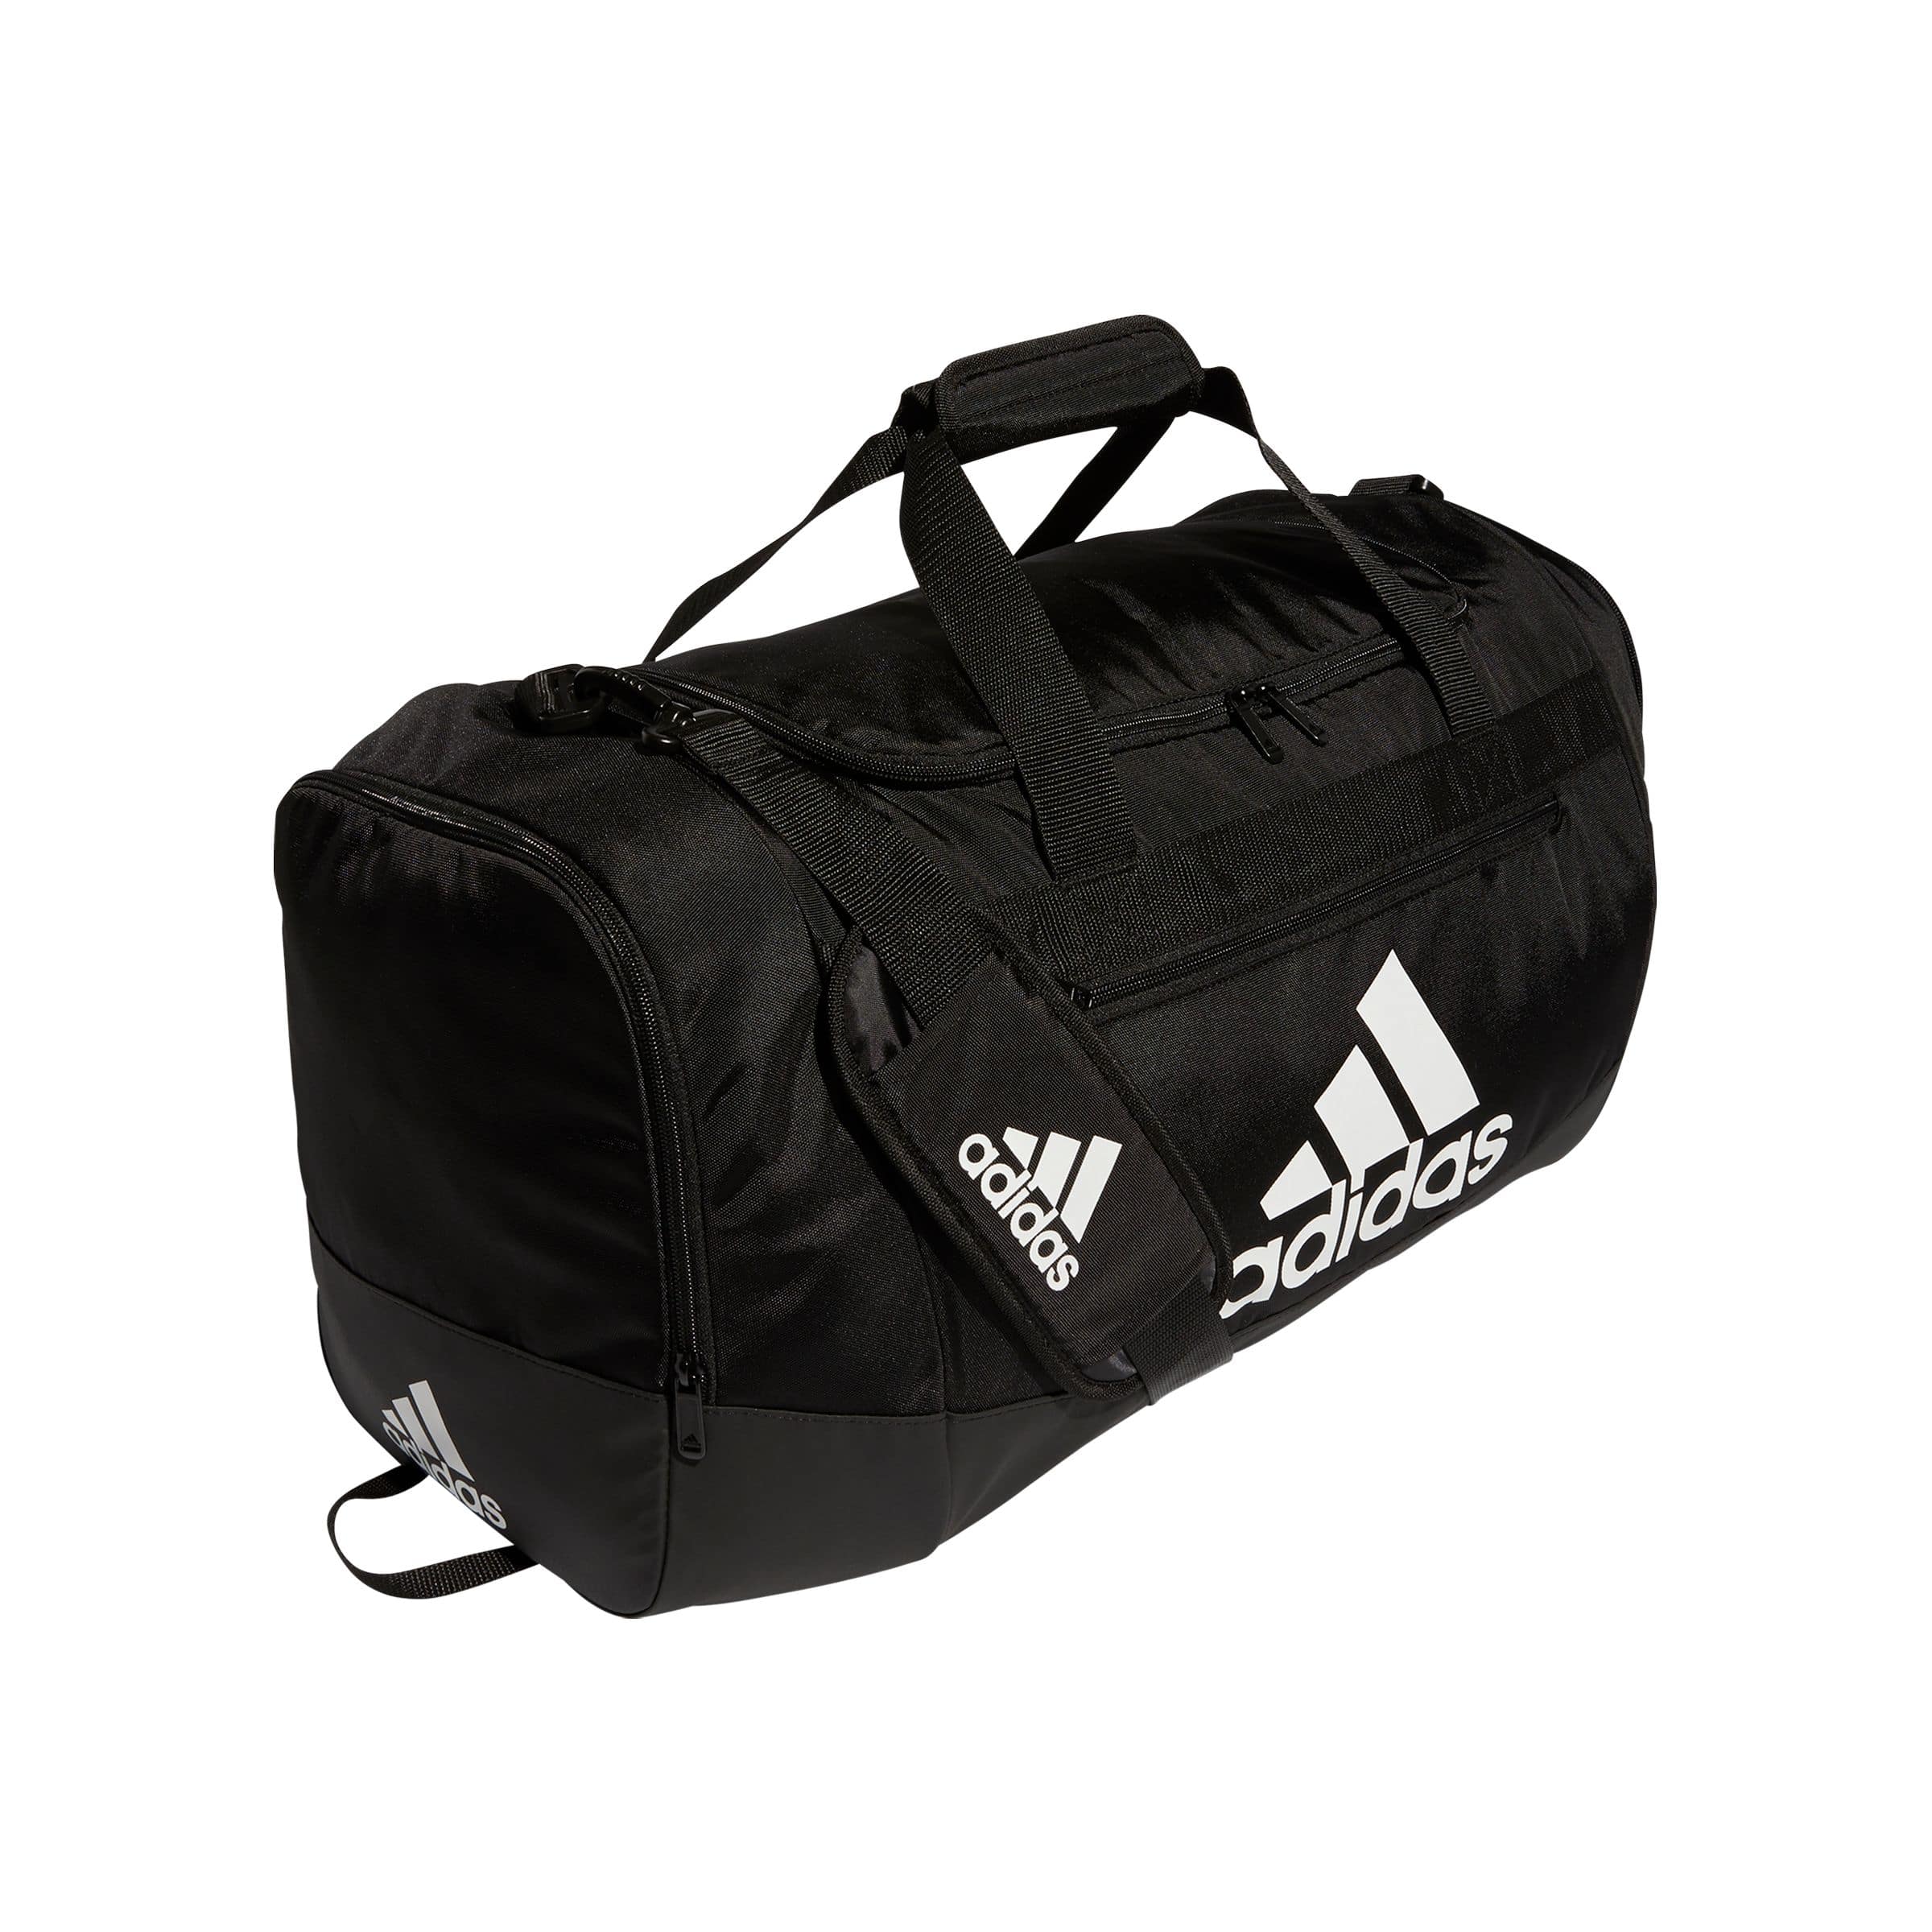 Adidas Defender Gym Sport Duffel Bag w/ Adjustable Shoulder Strap  Side  Pockets, Black Canadian Tire